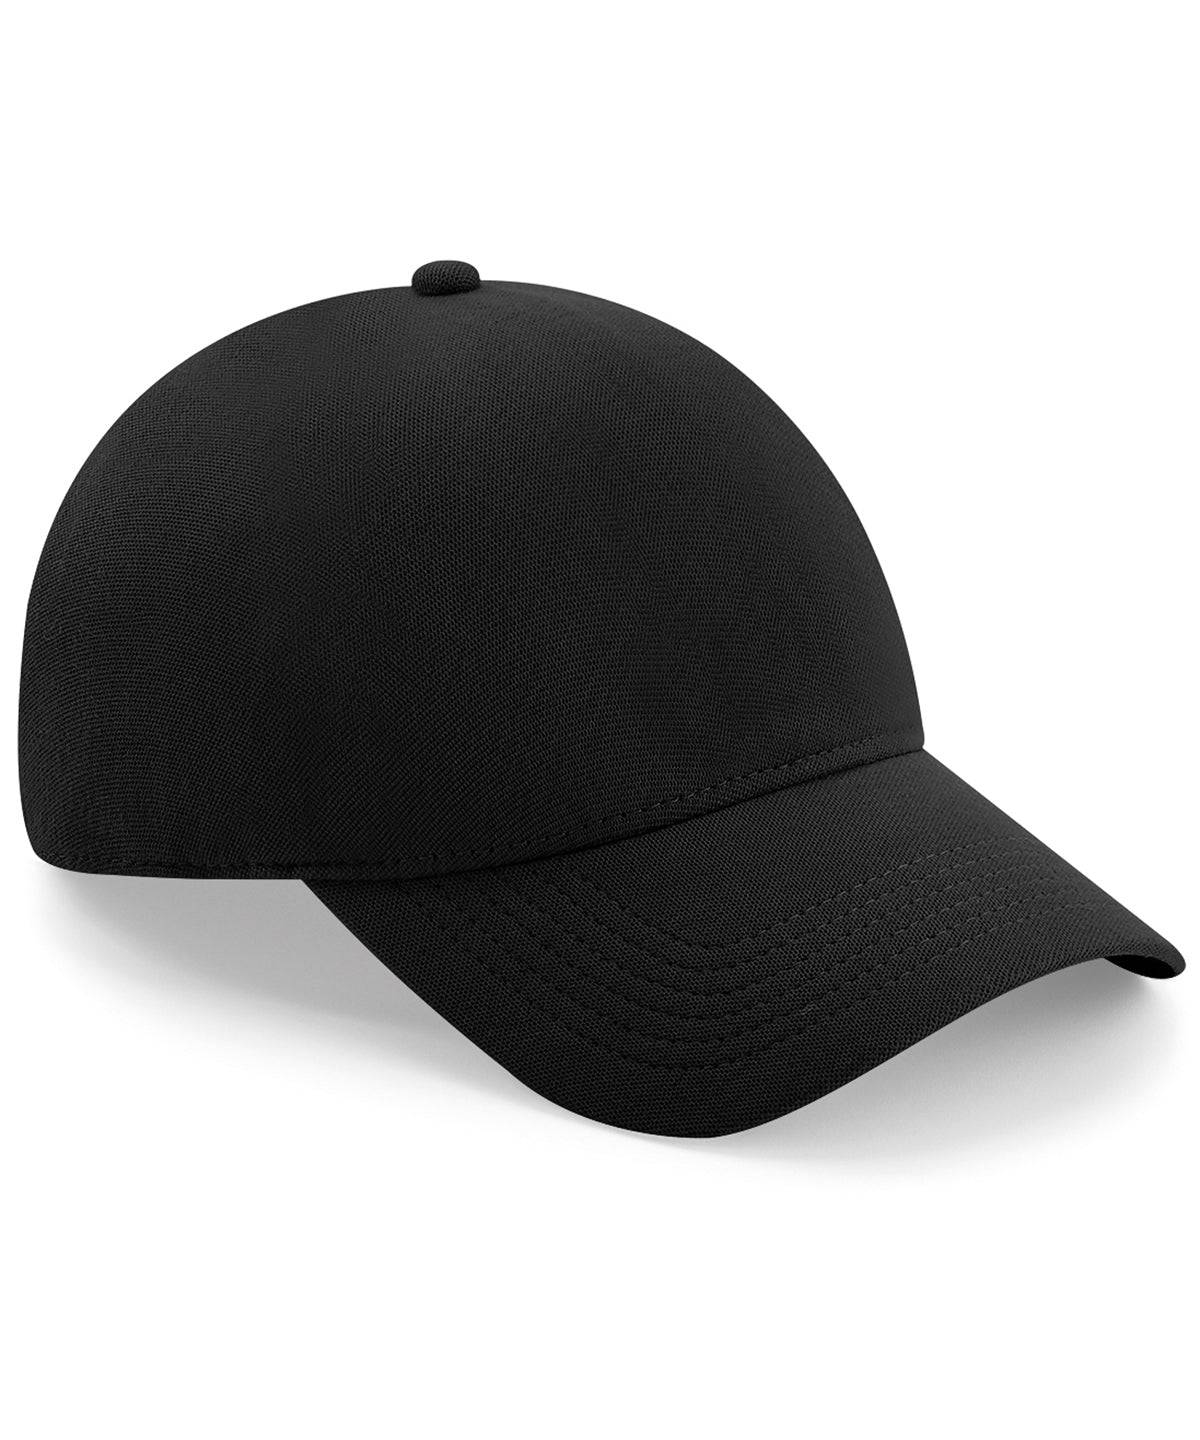 Black - Seamless waterproof cap